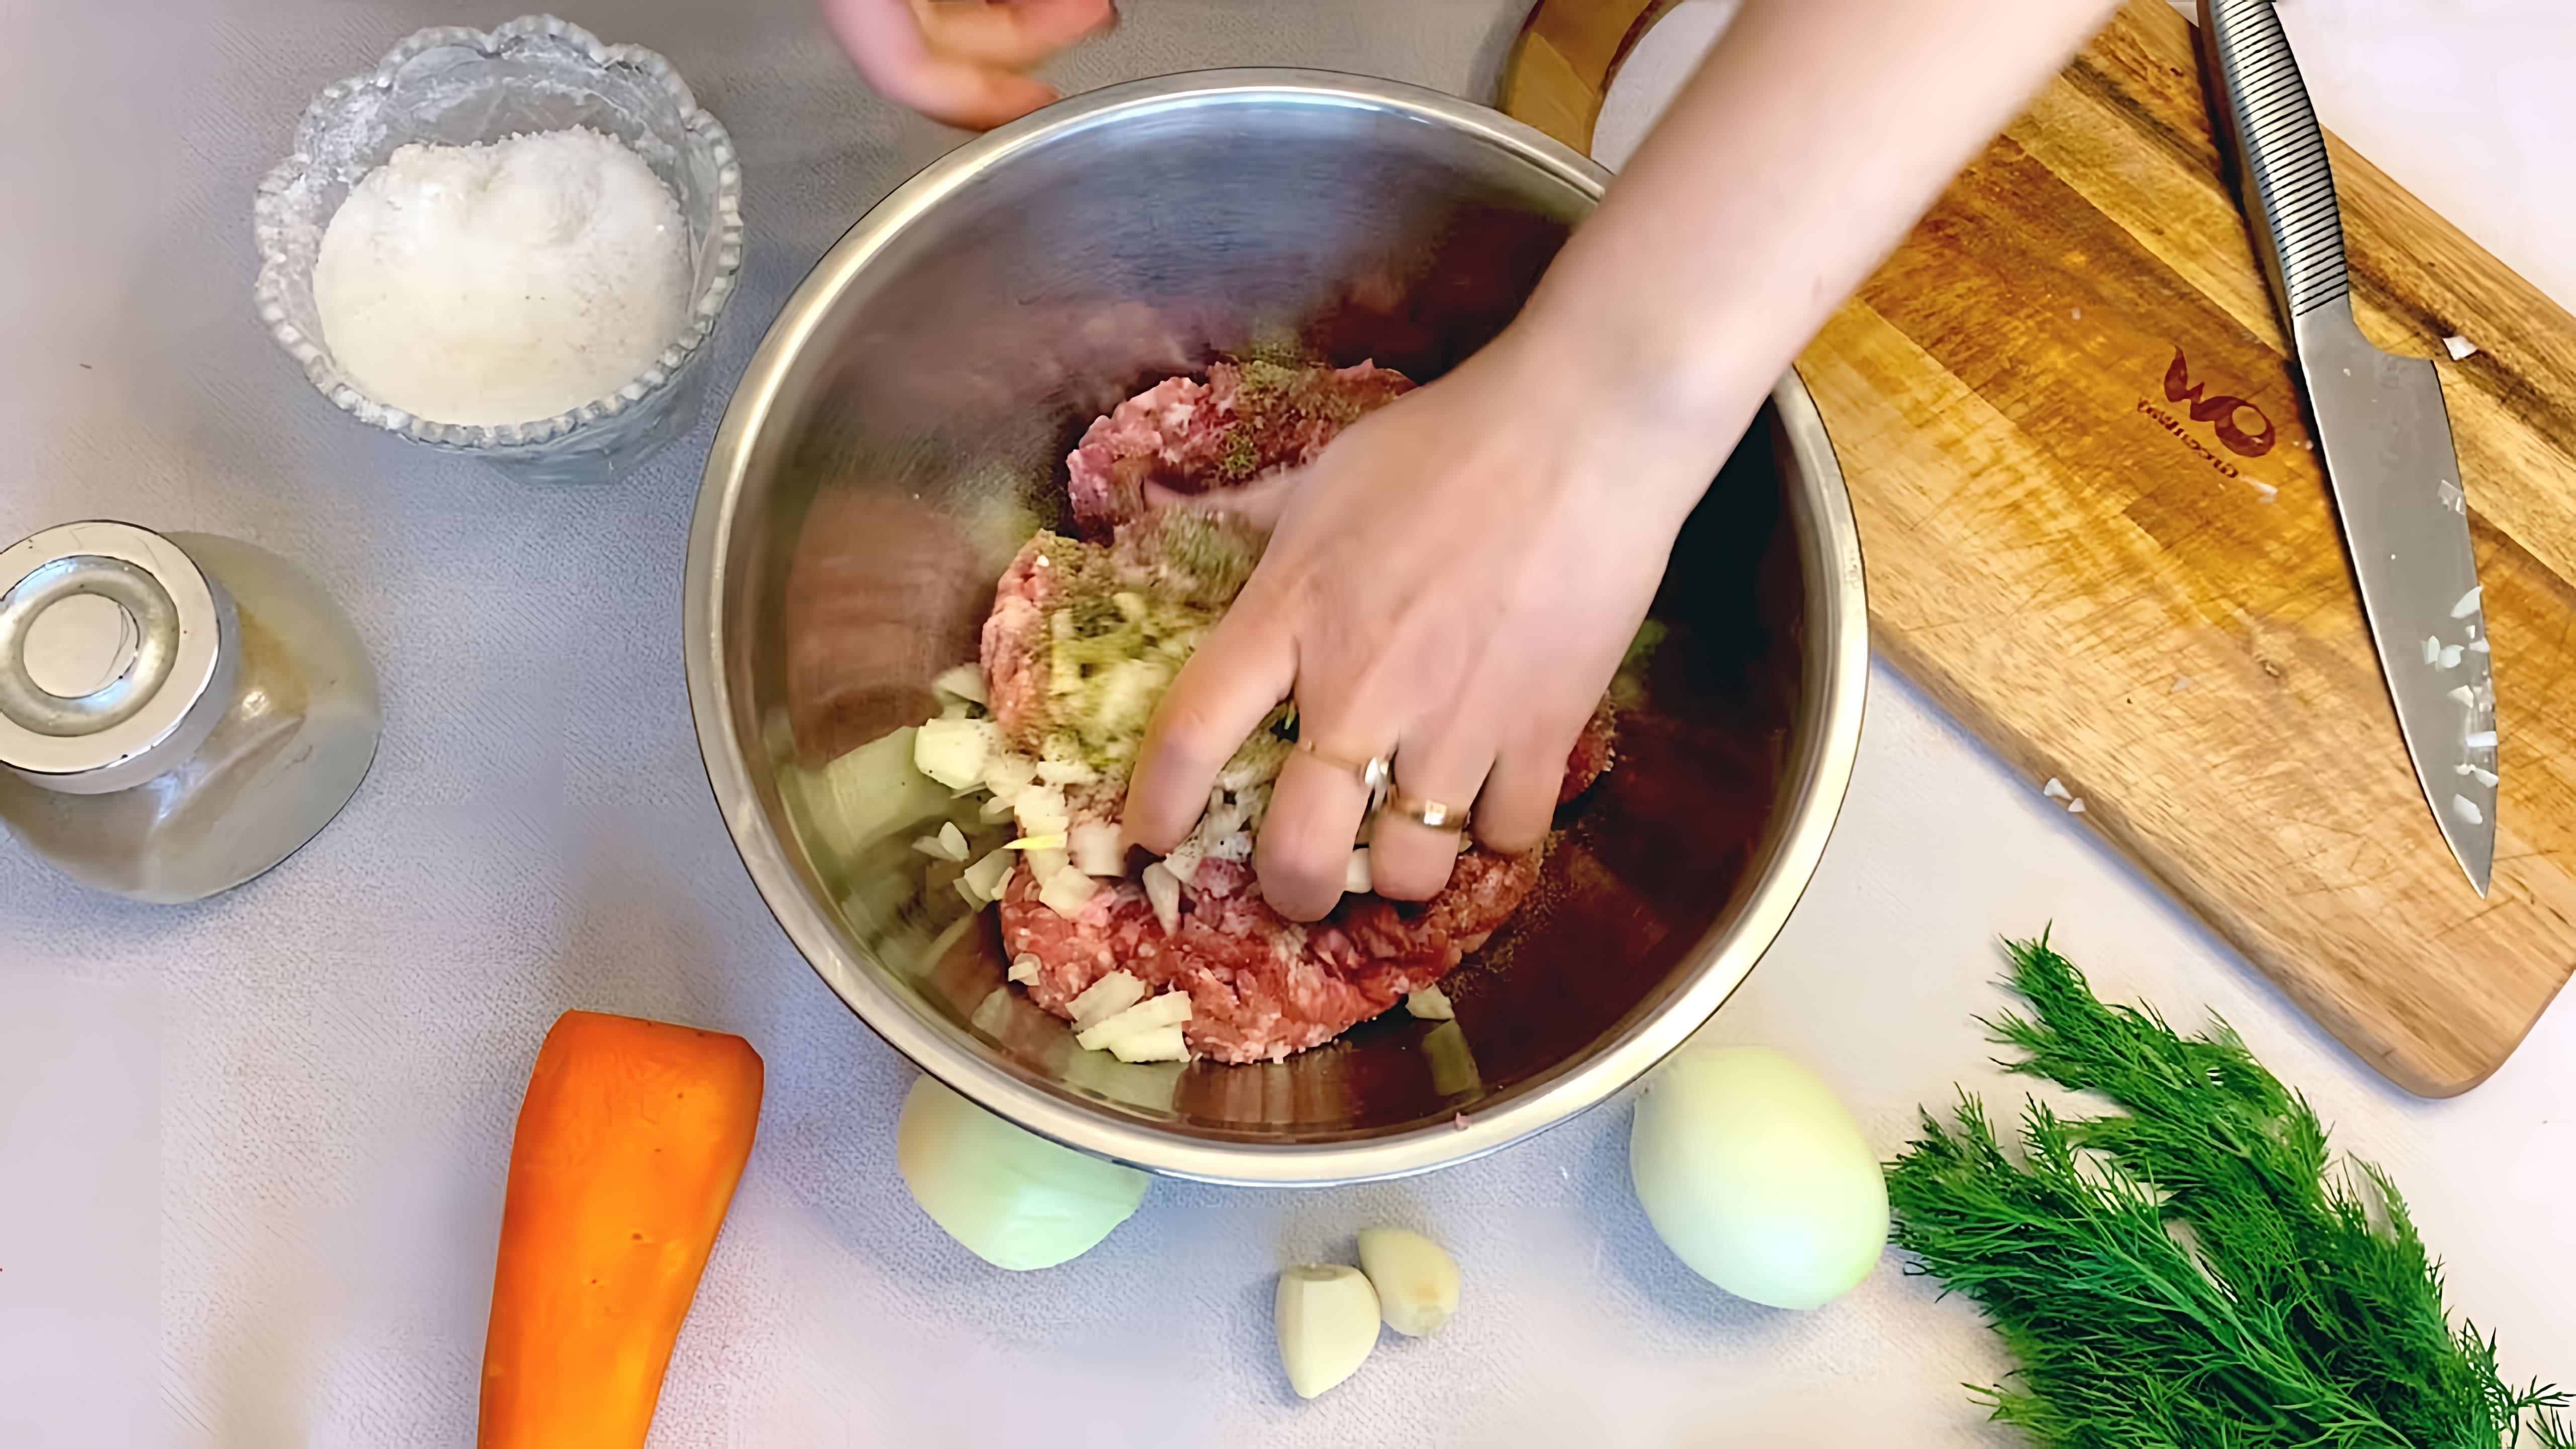 "С ума сойти! Простой рецепт: домашний суп с фрикадельками!" - это видео-ролик, который показывает, как приготовить вкусный и питательный суп с фрикадельками в домашних условиях